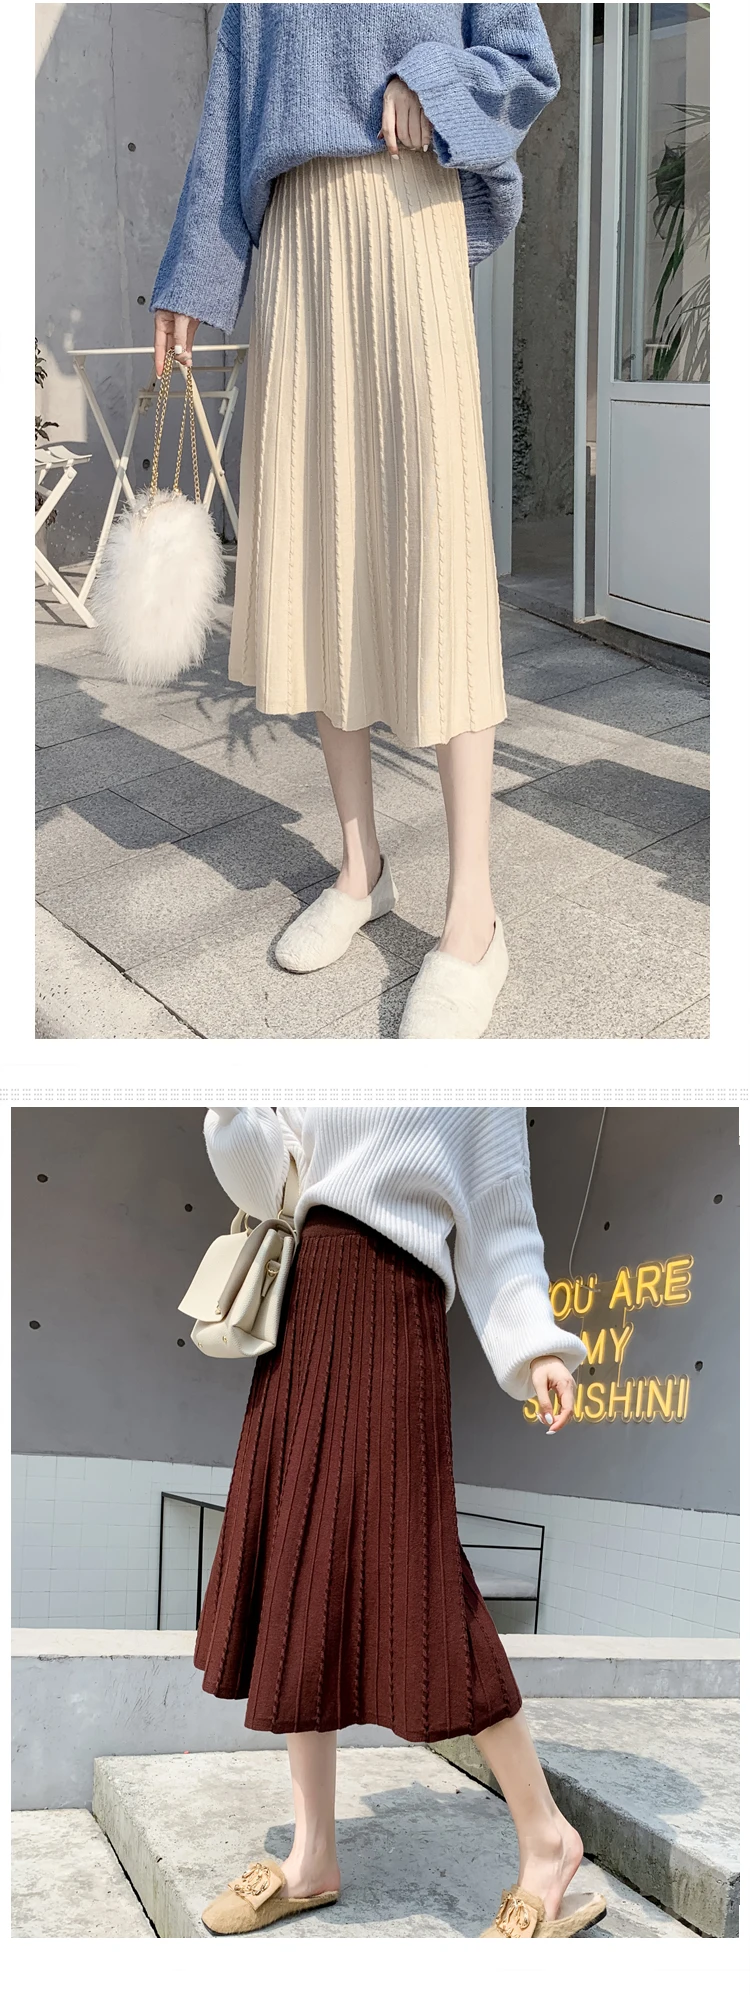 Beiyingni зимняя Корейская женская юбка черная с высокой талией трапециевидная плиссированная юбка тонкая однотонная трикотажная винтажная юбка миди Faldas